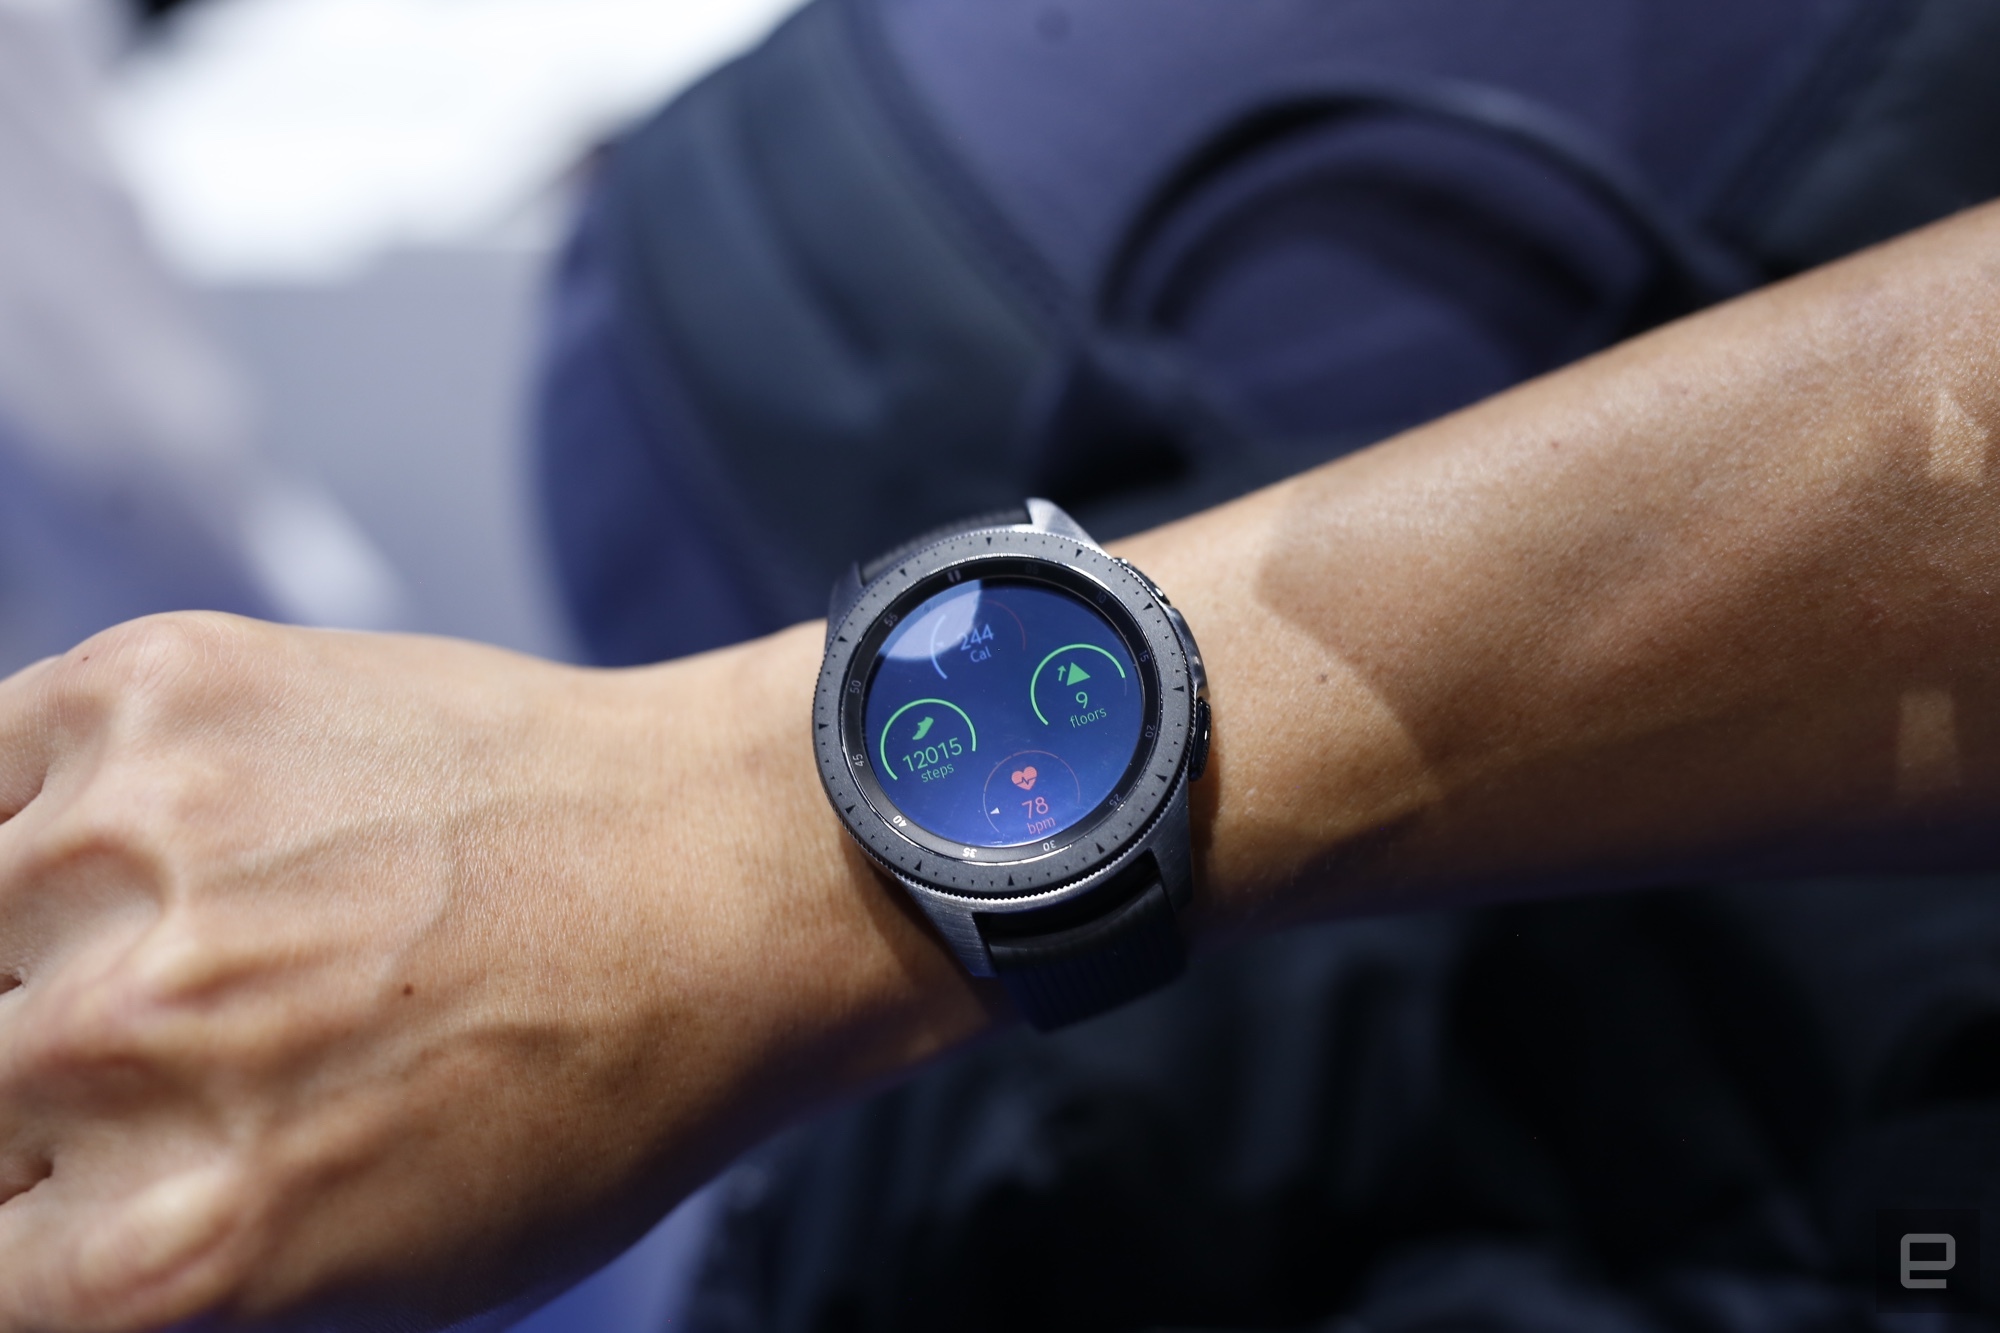 Samsung watch какие выбрать. Часы самсунг Galaxy 42mm. Умные часы Samsung Galaxy watch 42mm. Galaxy watch 42mm (2018). Samsung Galaxy watch 42mm на руке.